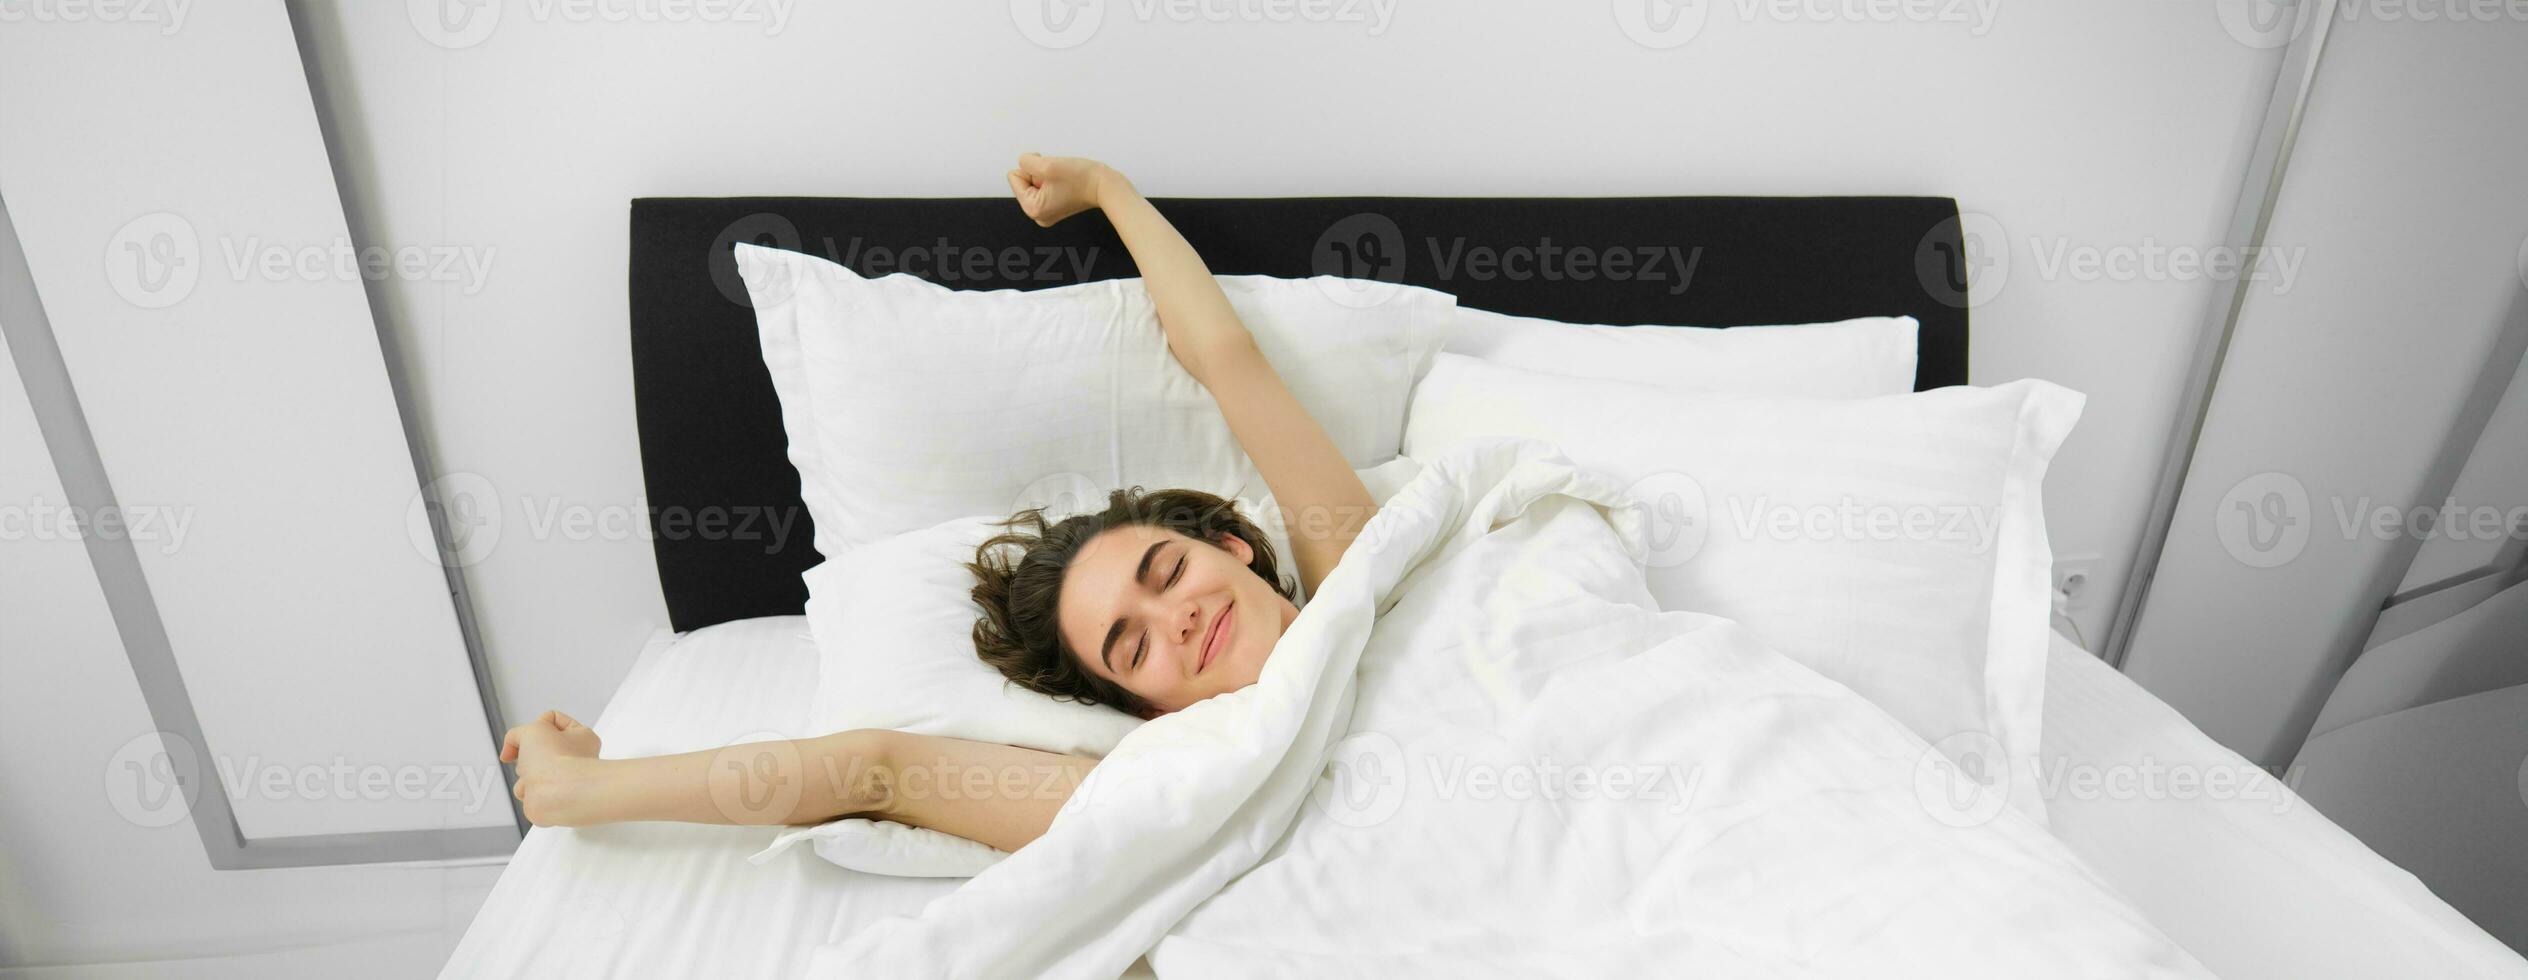 Porträt von Glücklich, zufrieden jung Frau, Dehnen ihr Waffen mit zufrieden lächeln, Lügen im Bett von Sanft Kopfkissen, aufwachen oben allein im Bett, hätten gut Nacht Schlaf foto